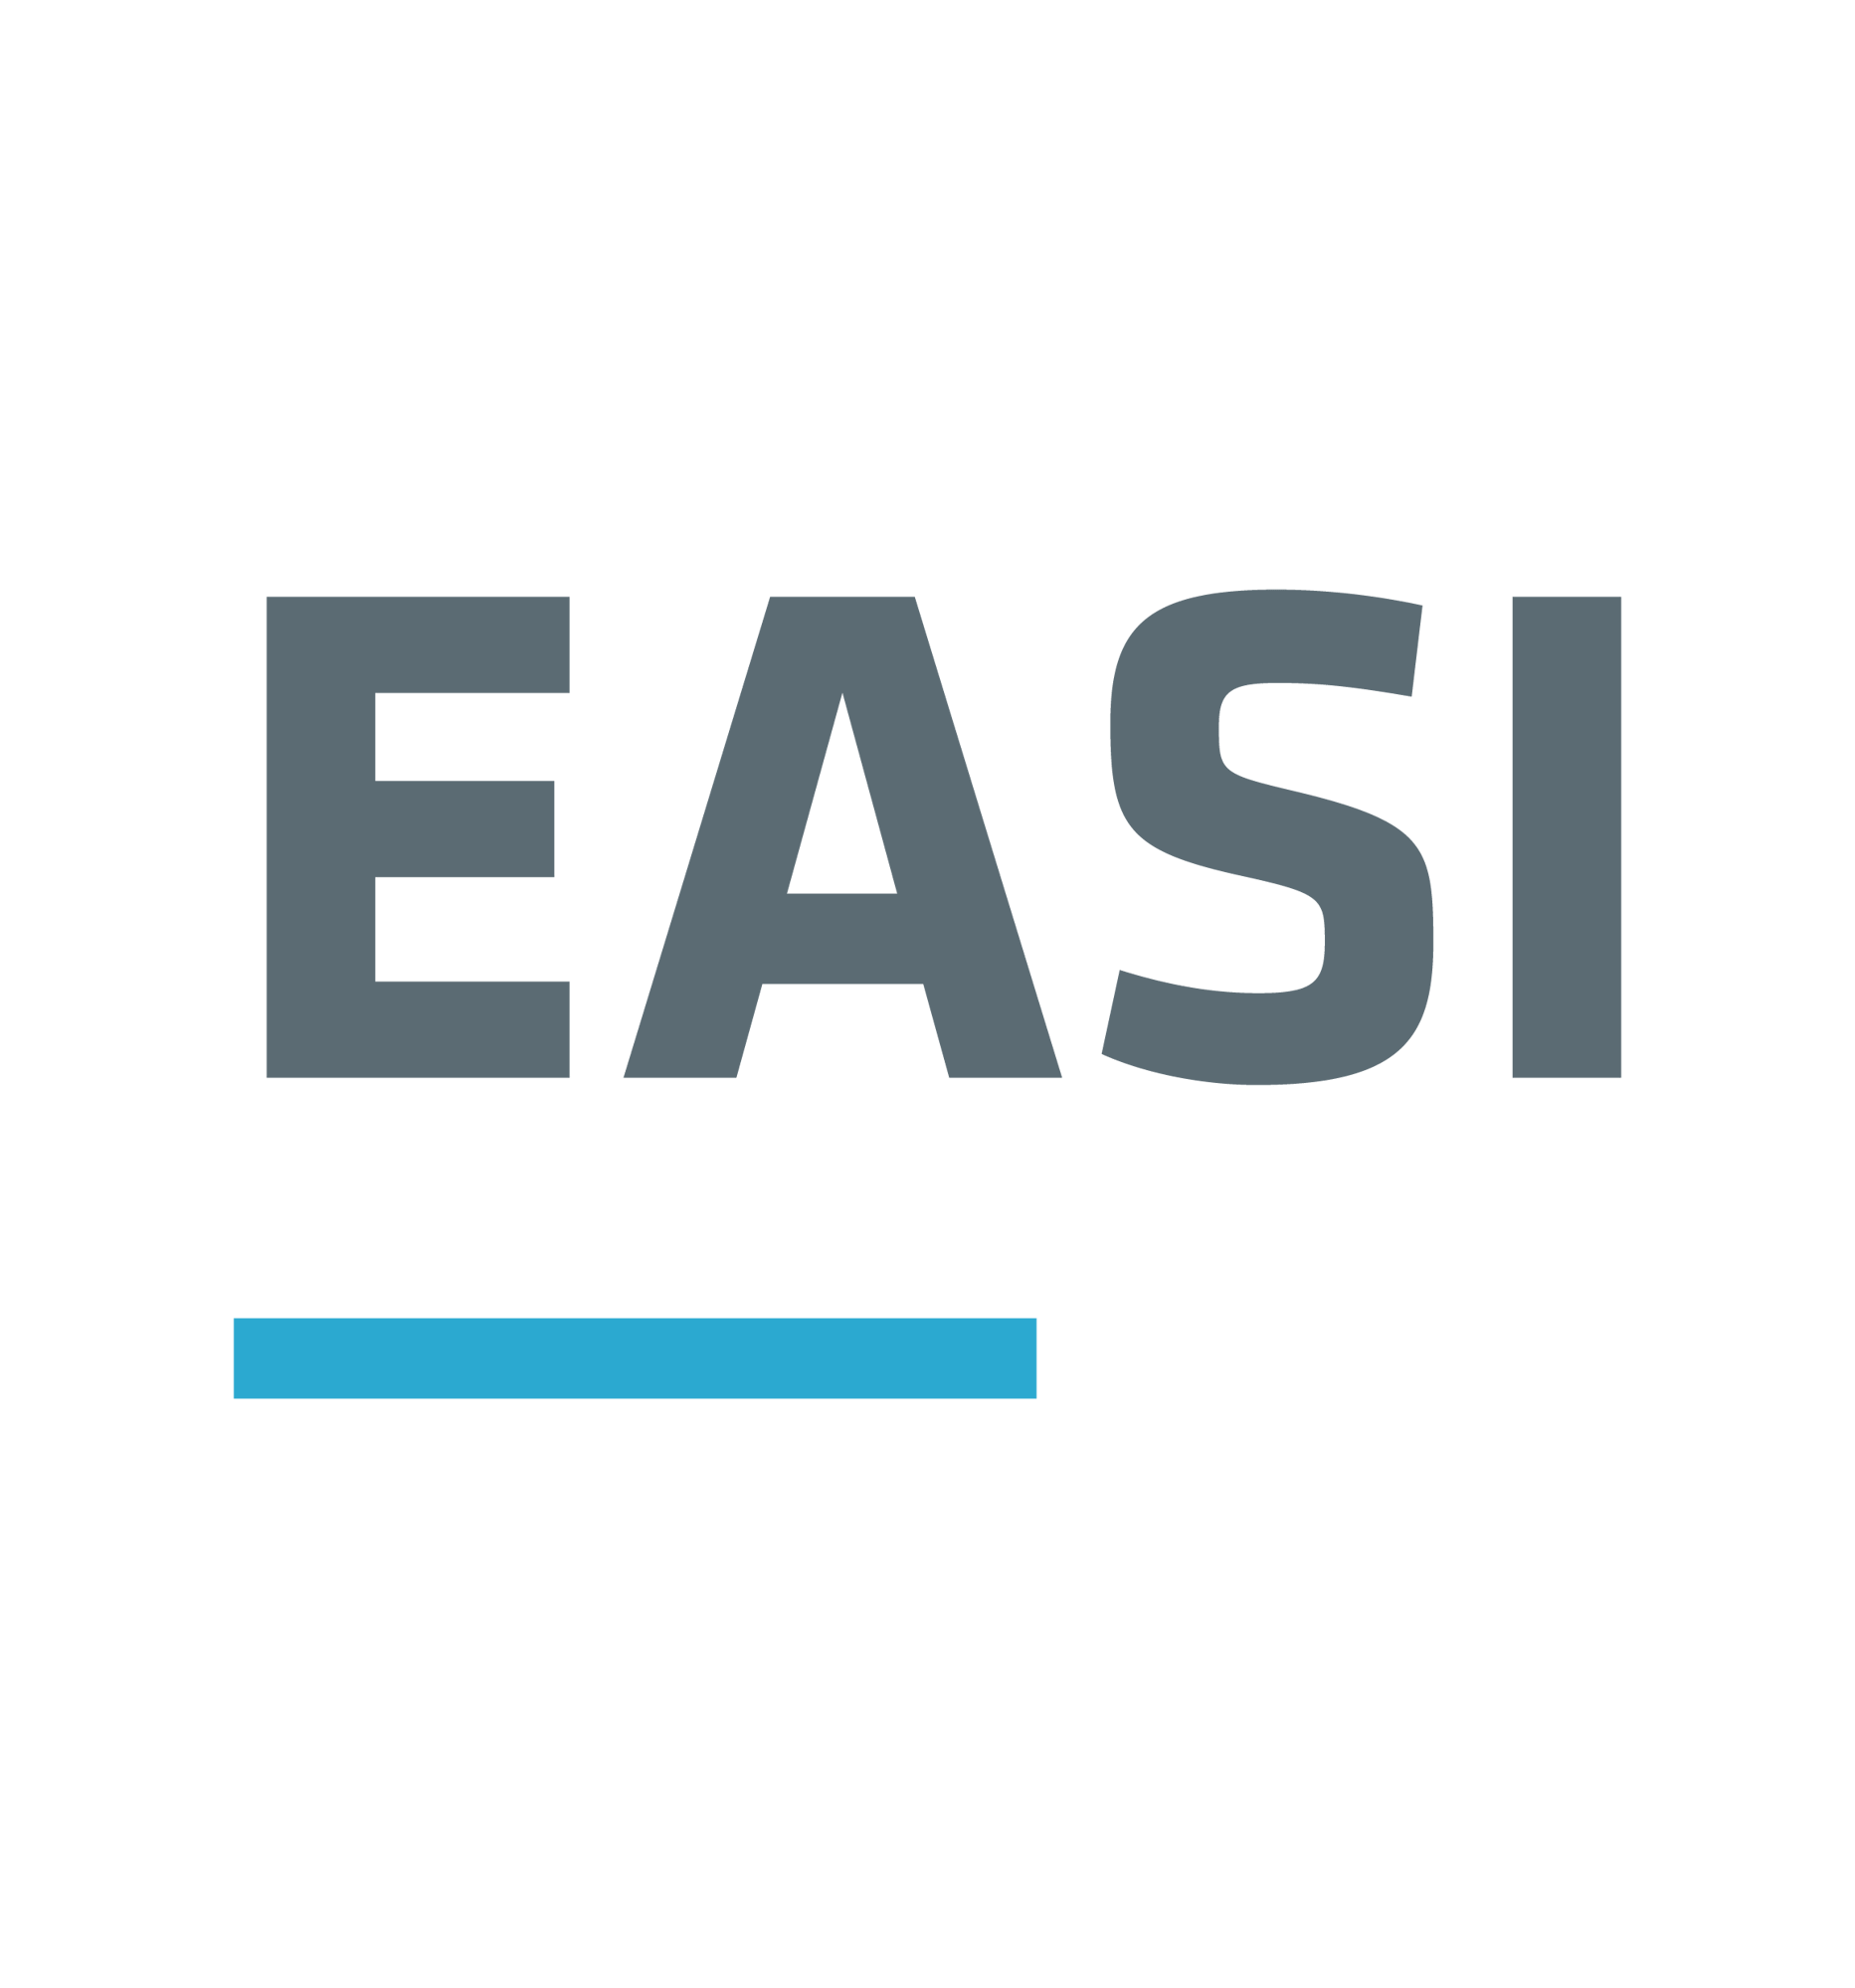 easi_positiv_logo_easi_logo